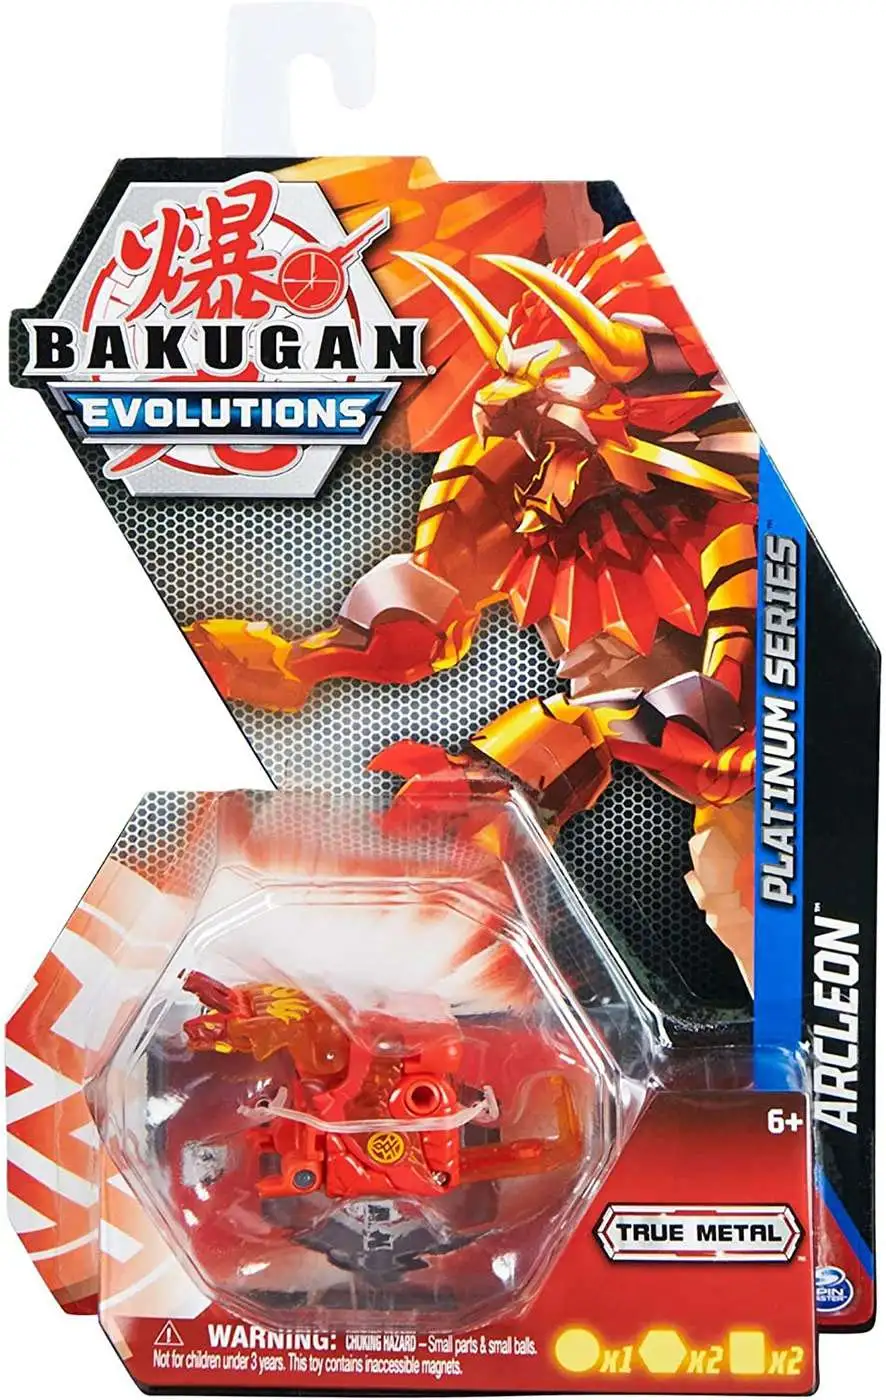 Bakugan Bakugan 'Evolutions' Platinum Series 1er Pack